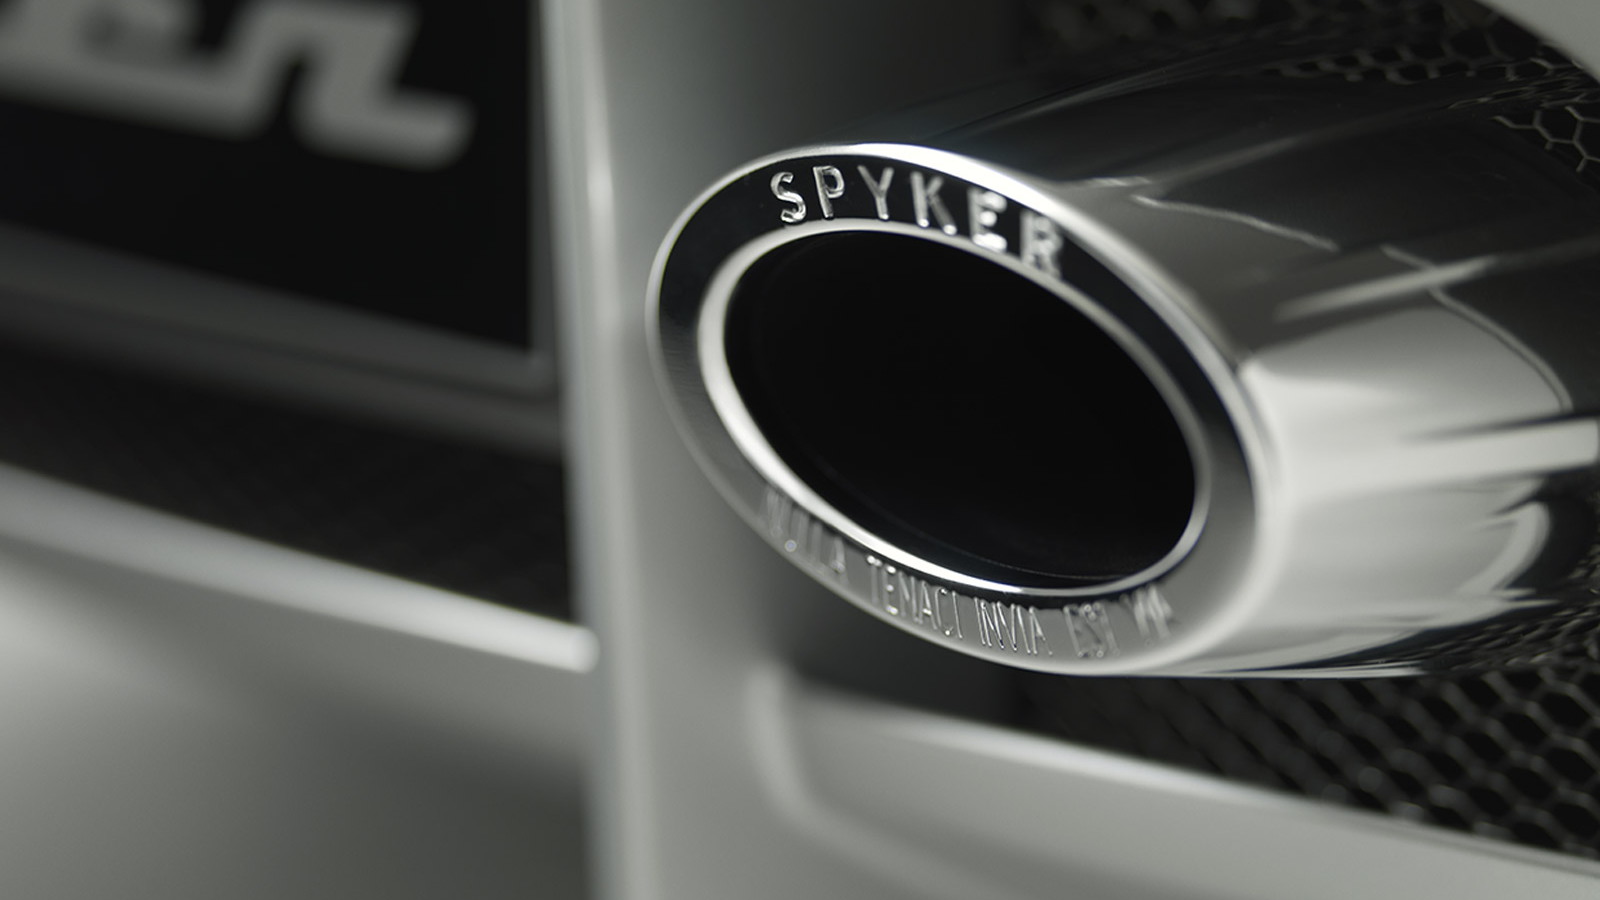 Spyker B6 Venator concept car